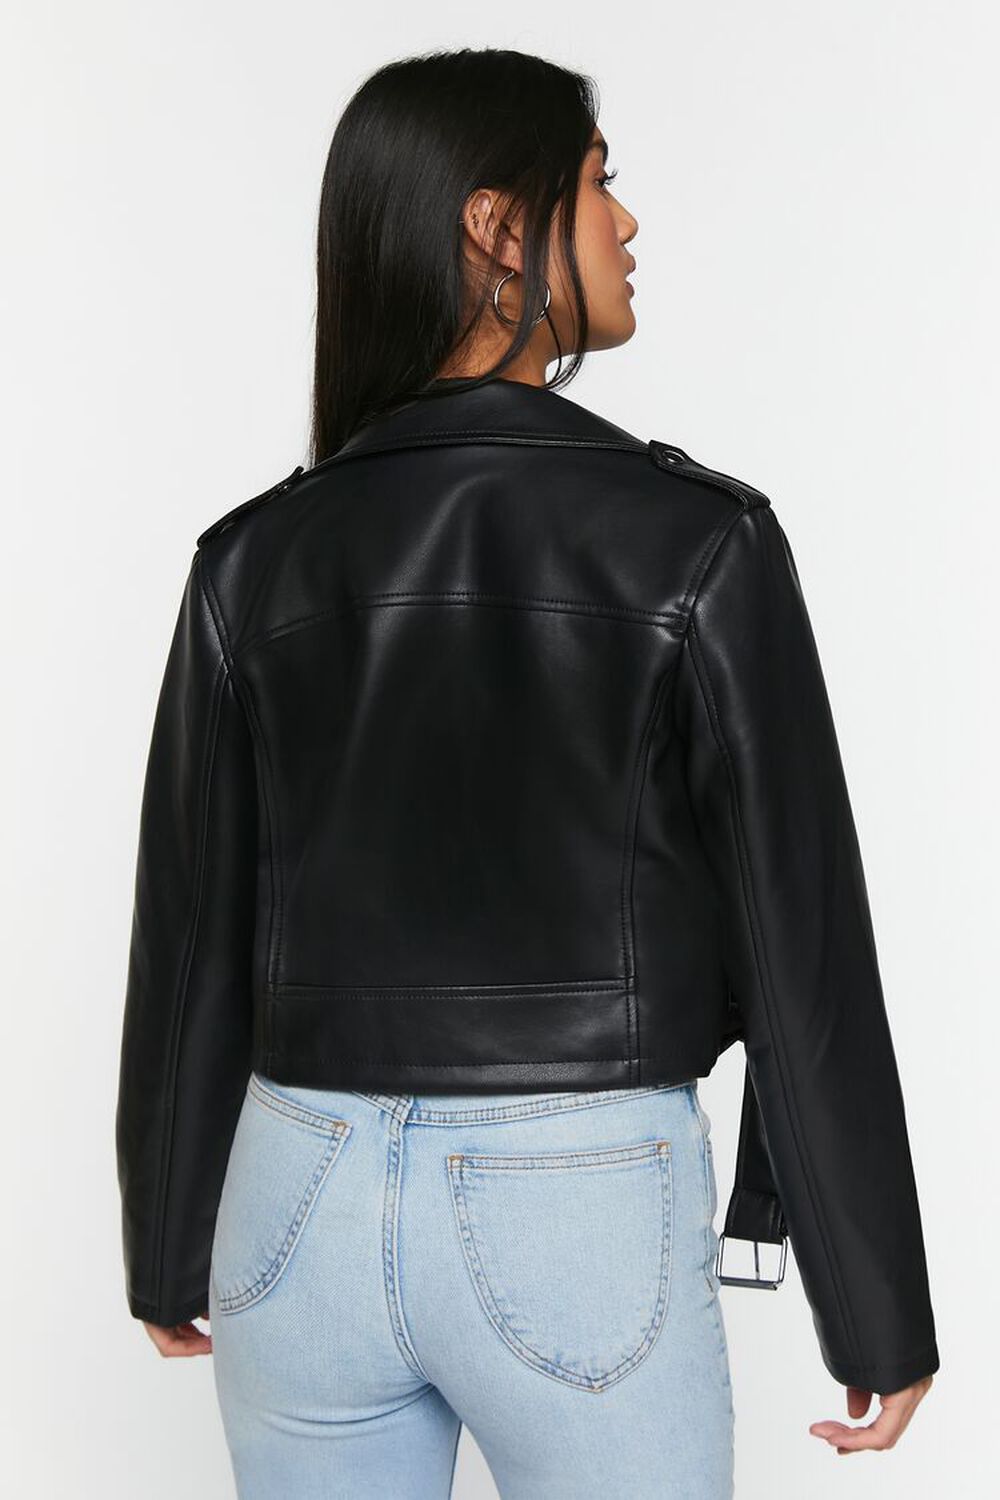 BLACK Faux Leather Cropped Moto Jacket, image 3